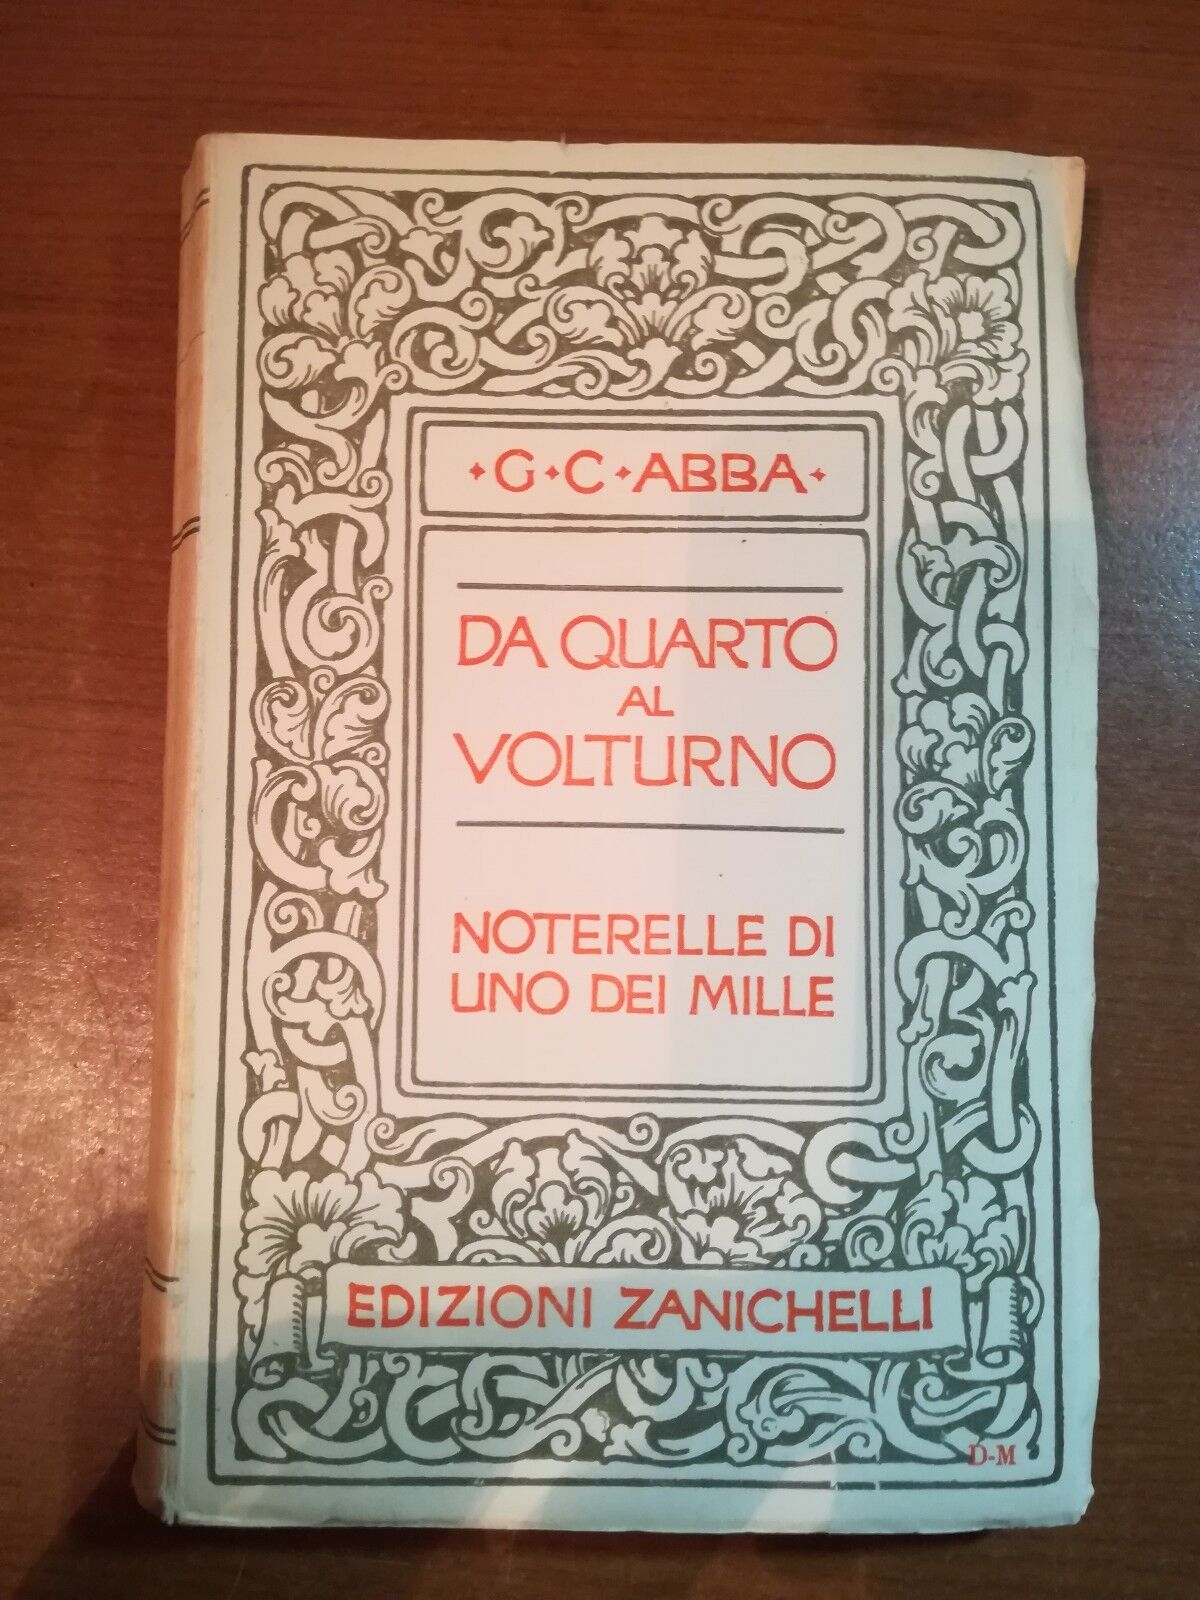 Da quarto al volturno  - G.C.Abba - Zanichelli - 1935  - M